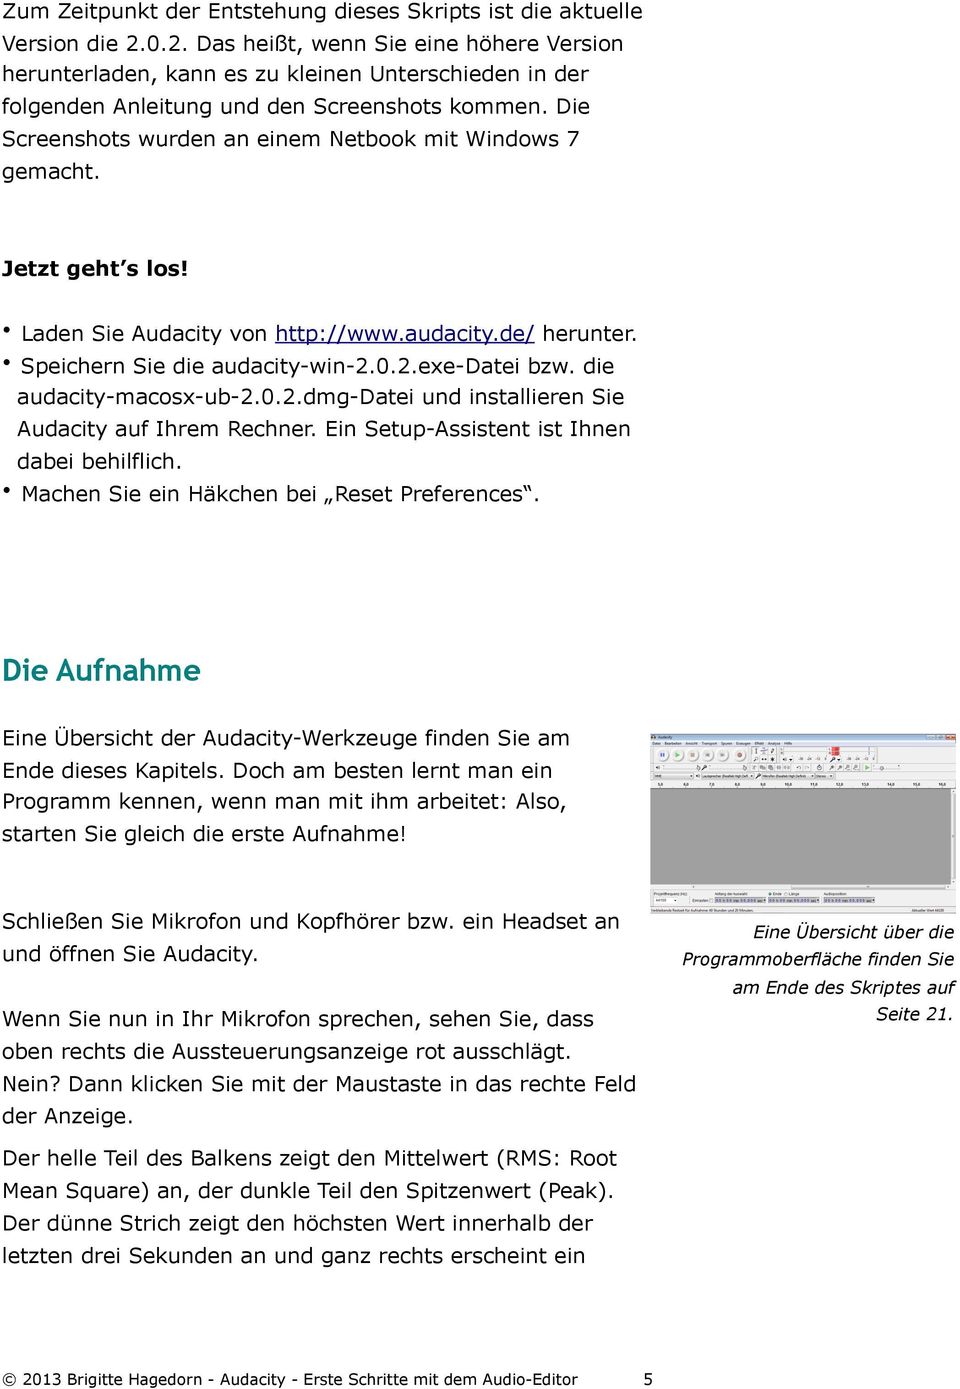 Die Screenshots wurden an einem Netbook mit Windows 7 gemacht. Jetzt geht s los! Laden Sie Audacity von http://www.audacity.de/ herunter. Speichern Sie die audacity-win-2.0.2.exe-datei bzw.